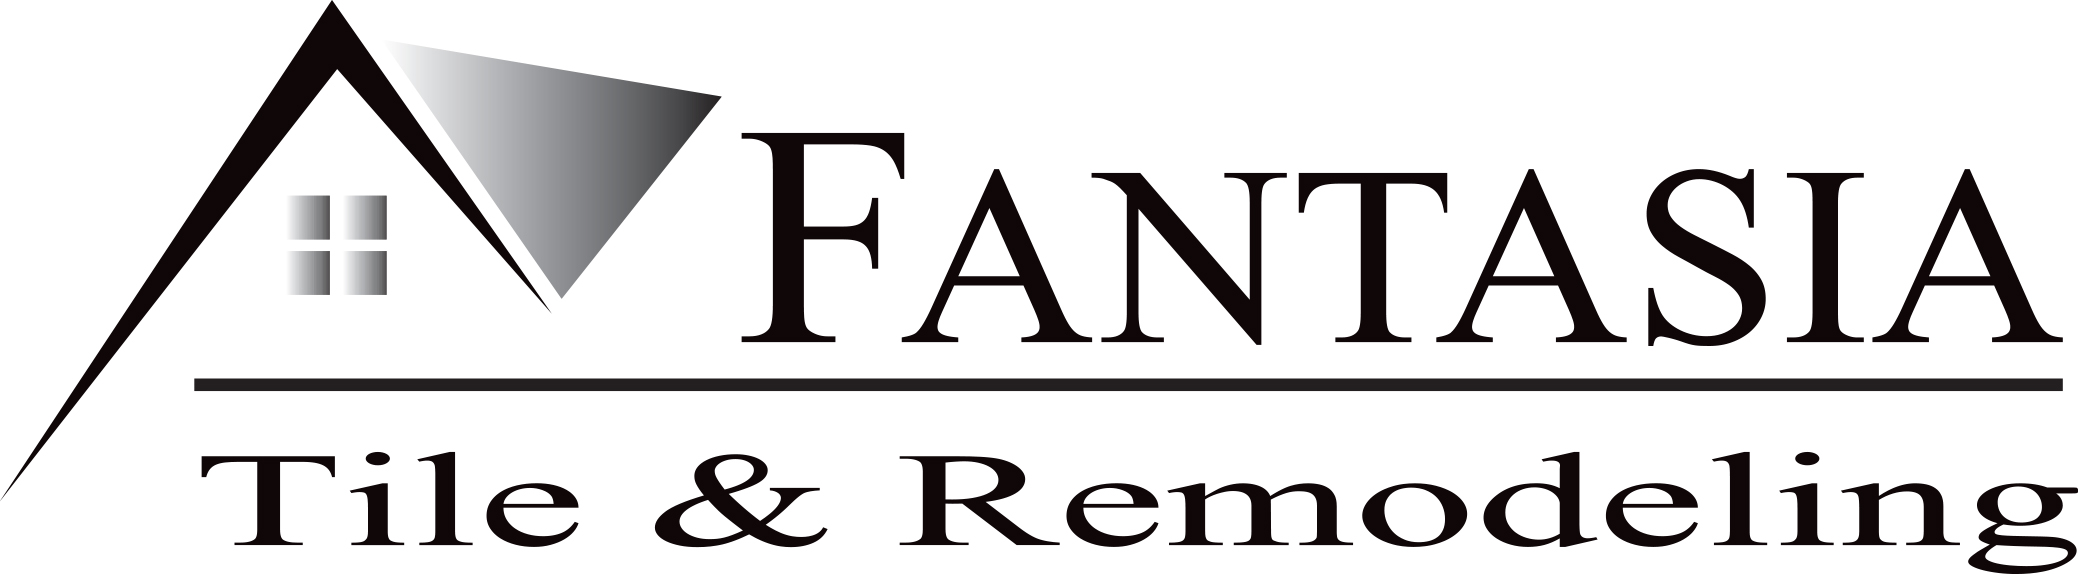 Sponsor Fantasia Tile & Remodeling